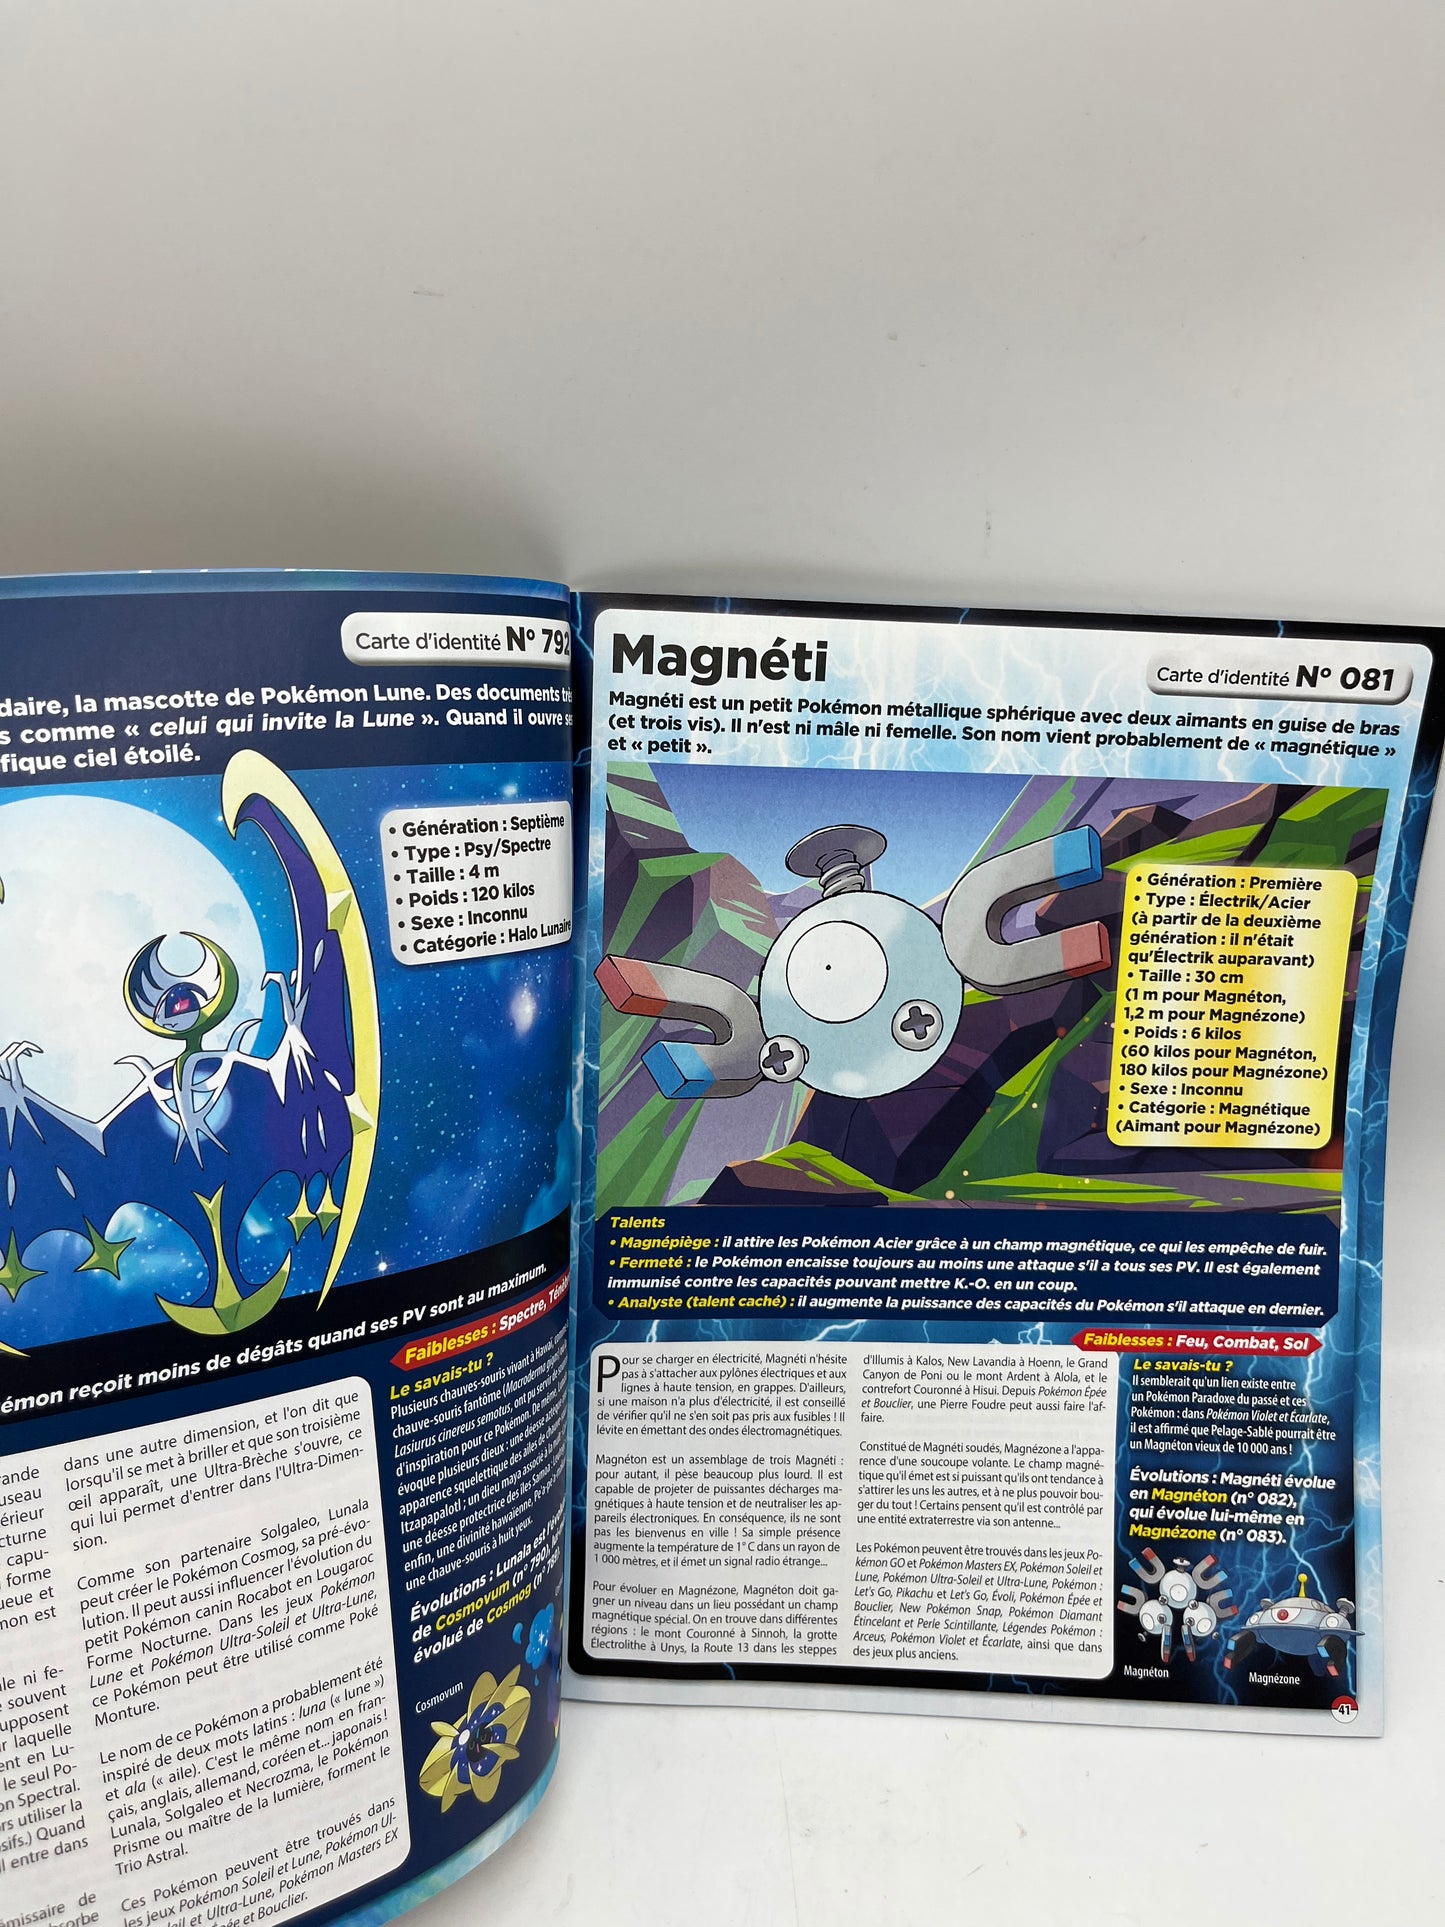 Livre d’activité Magazine Le grand guide Pokémon le guide du dresseur avec + de 80 pokemon Neuf !!